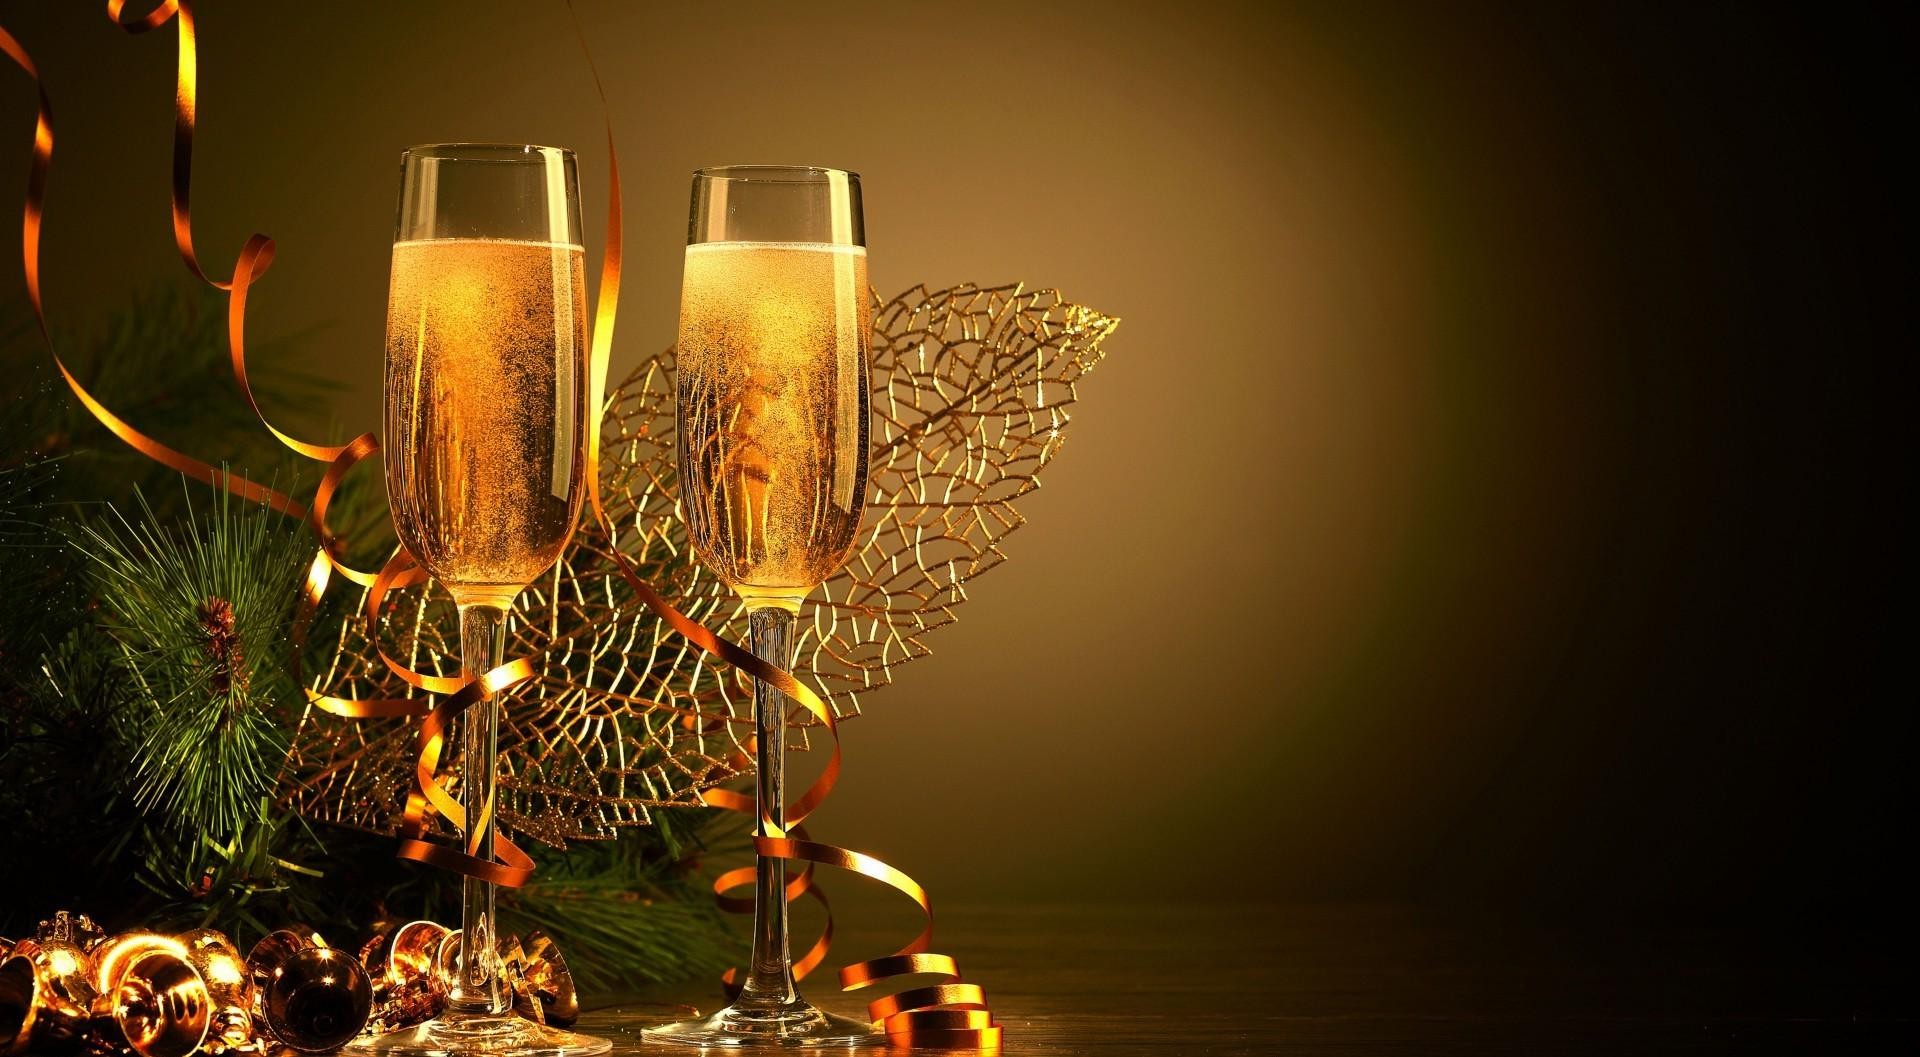 nuevo fondo de pantalla romántico,beber,copas de champán,encendiendo,vaso,champán